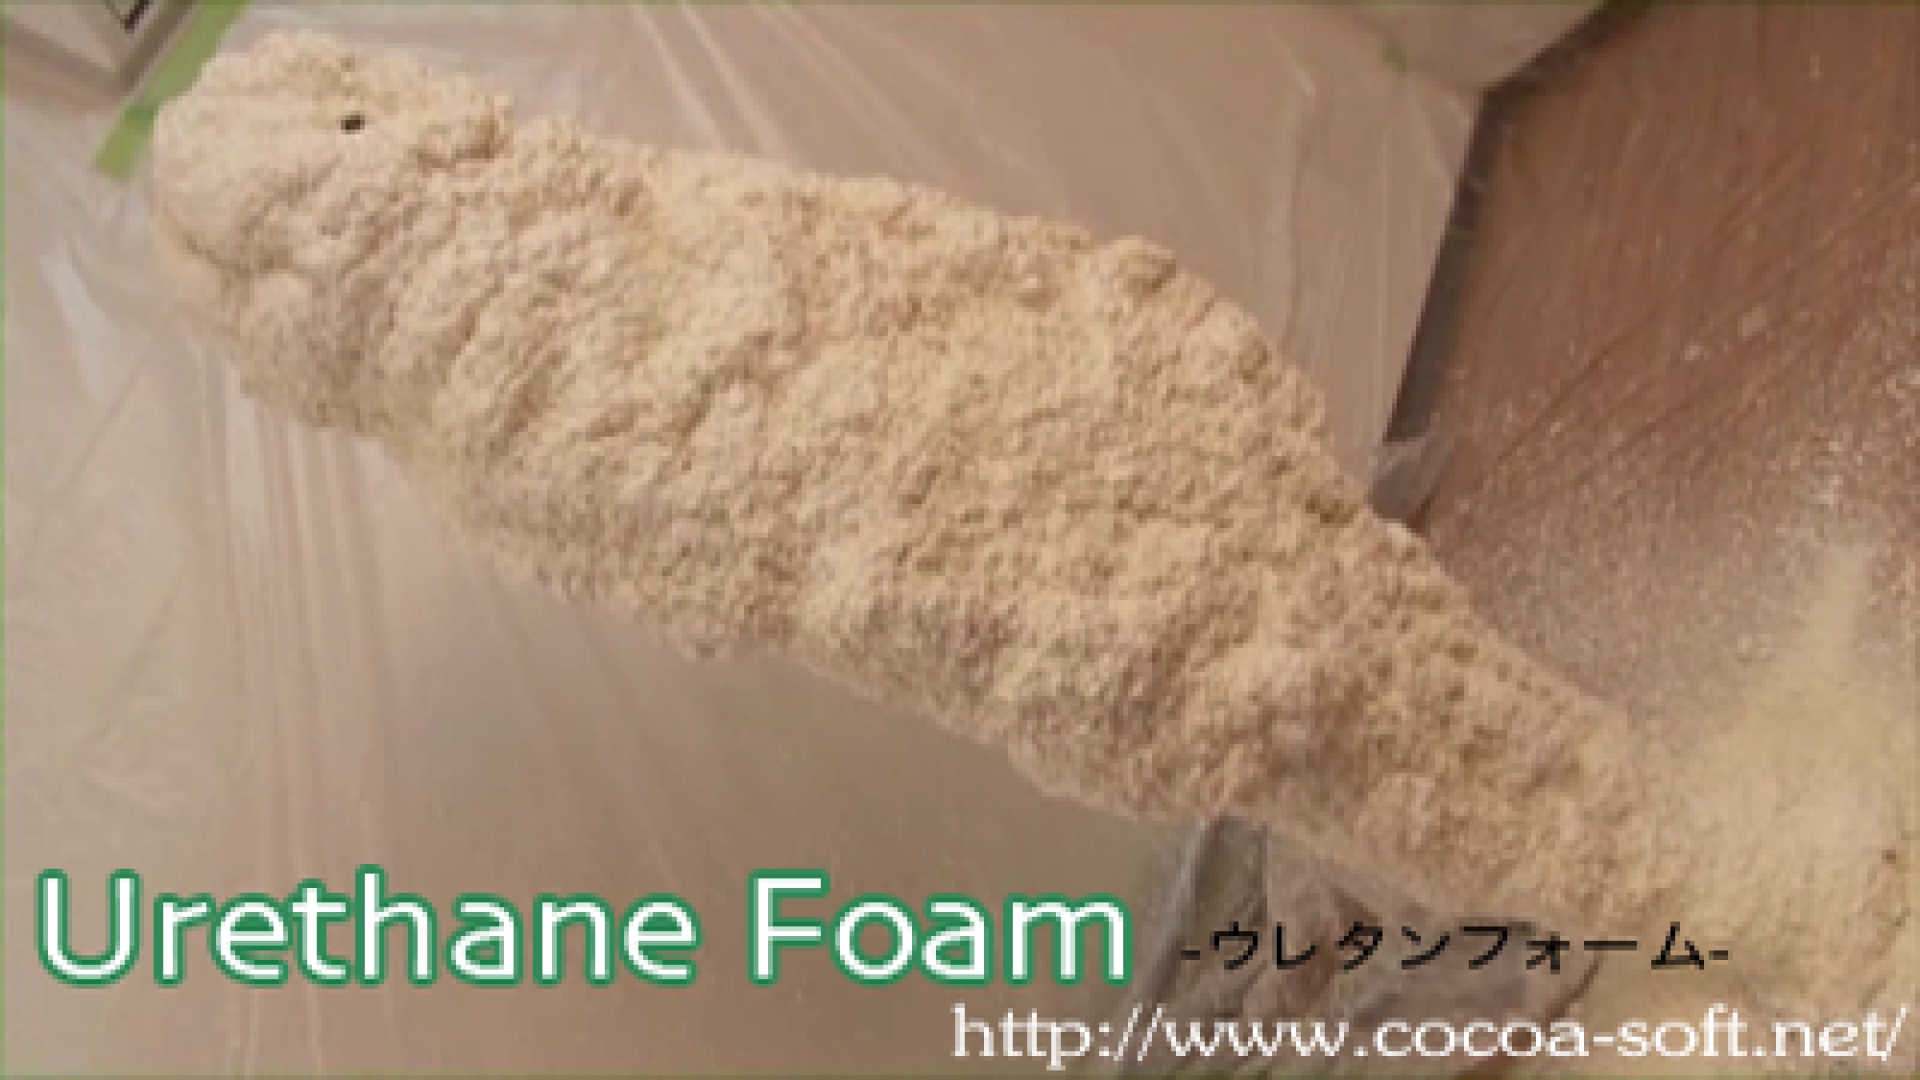 Urethane Foam